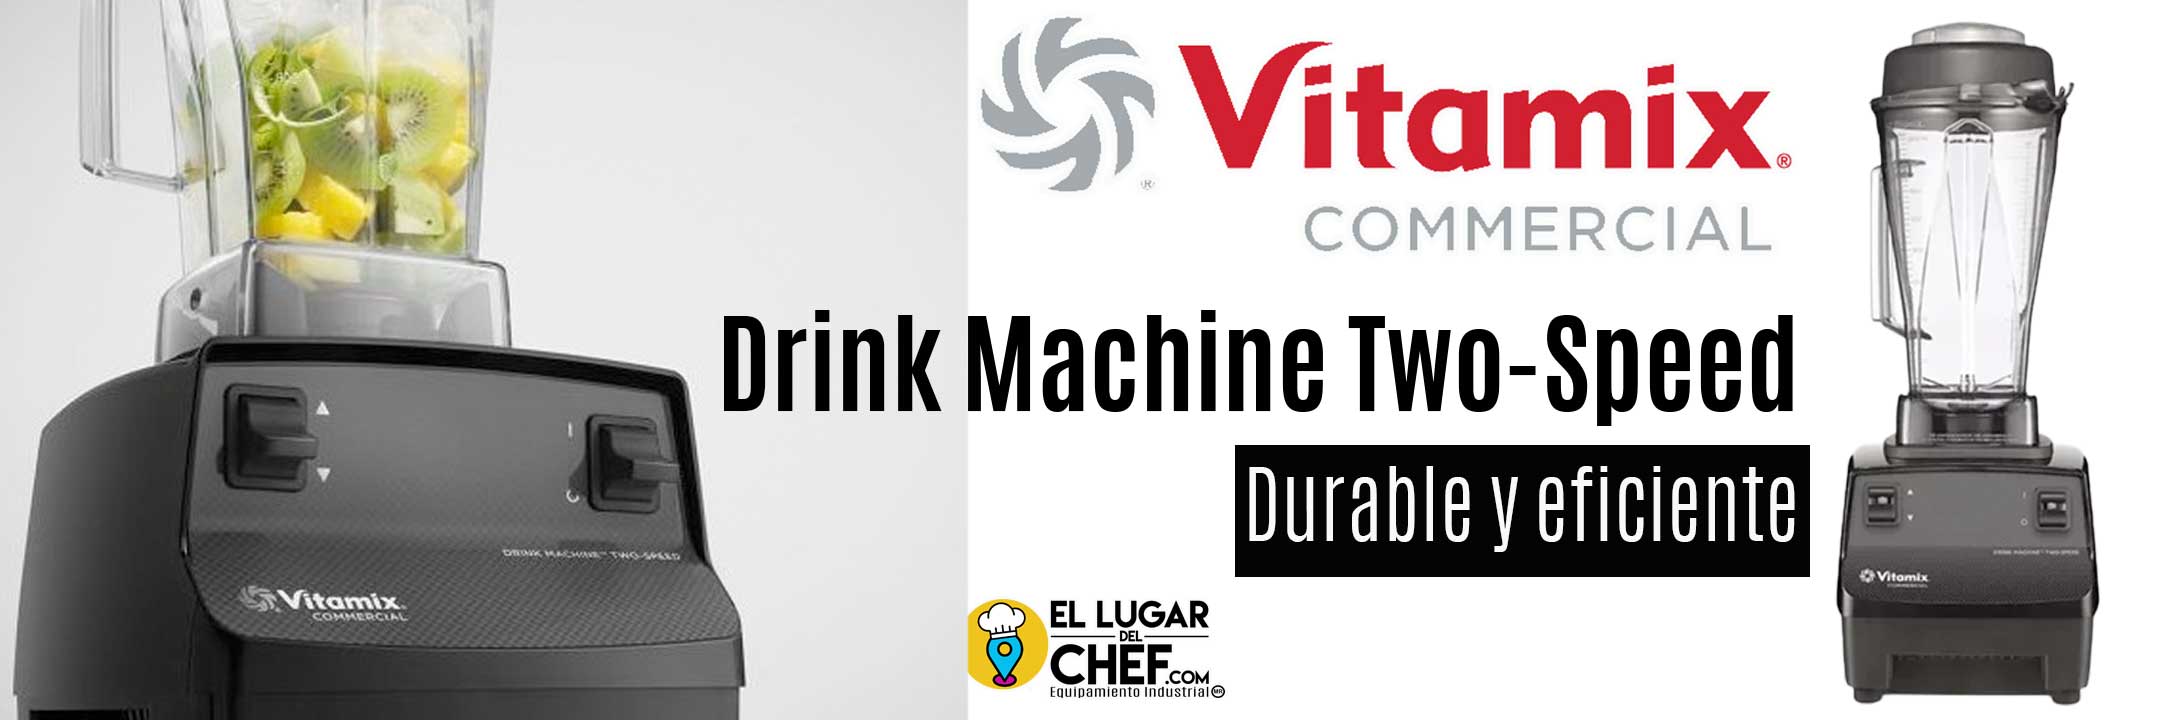 Licuadora vitamix drink machine two speed